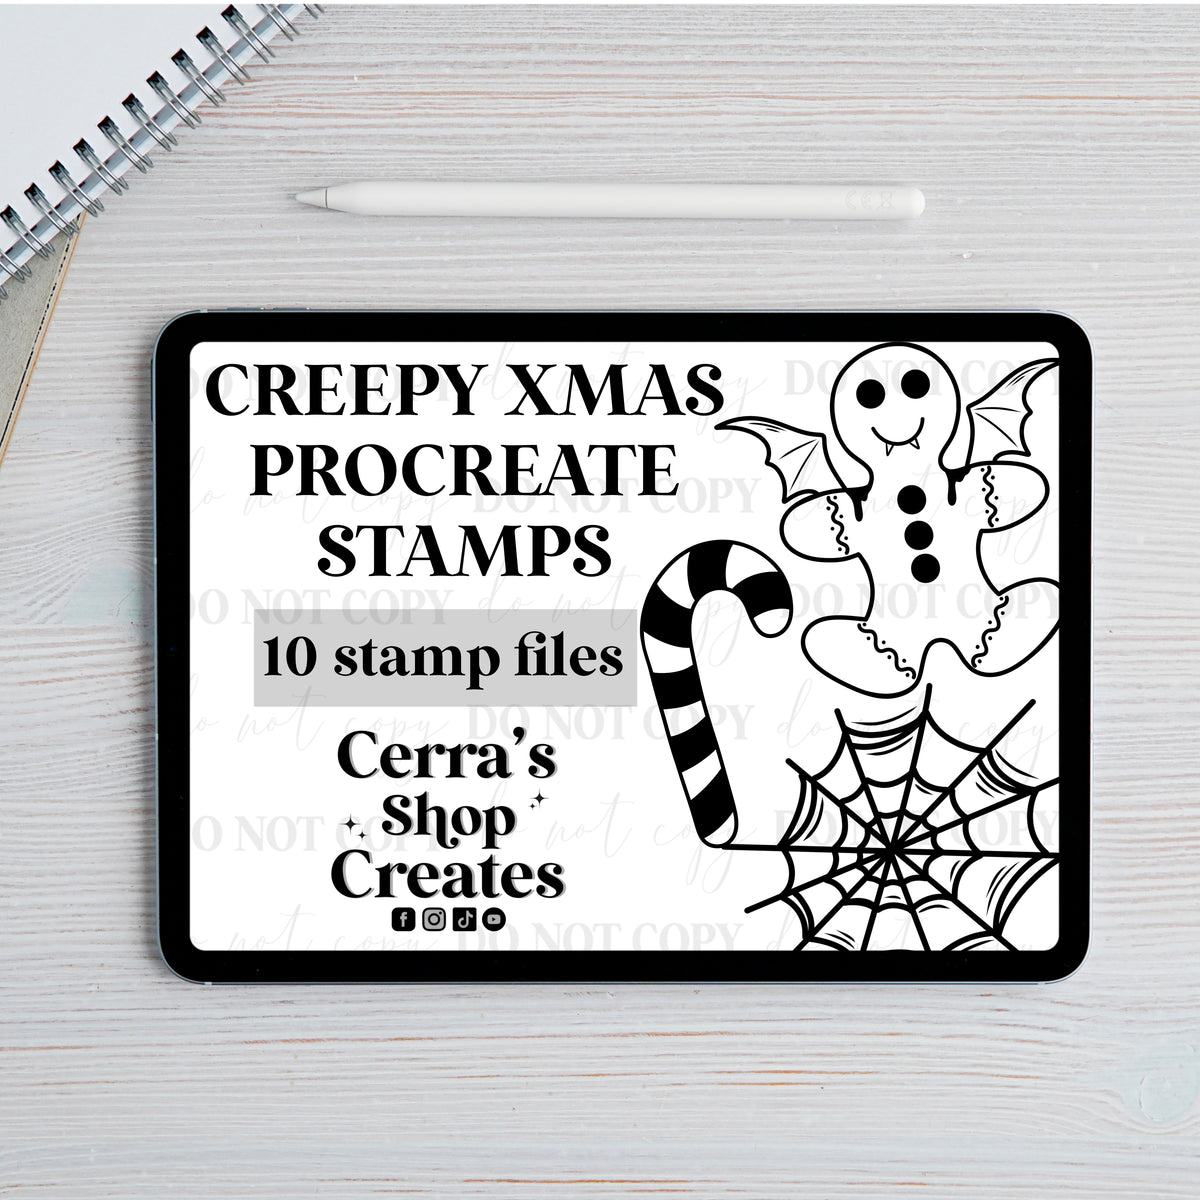 Creepy Chrismas stamps for procreate